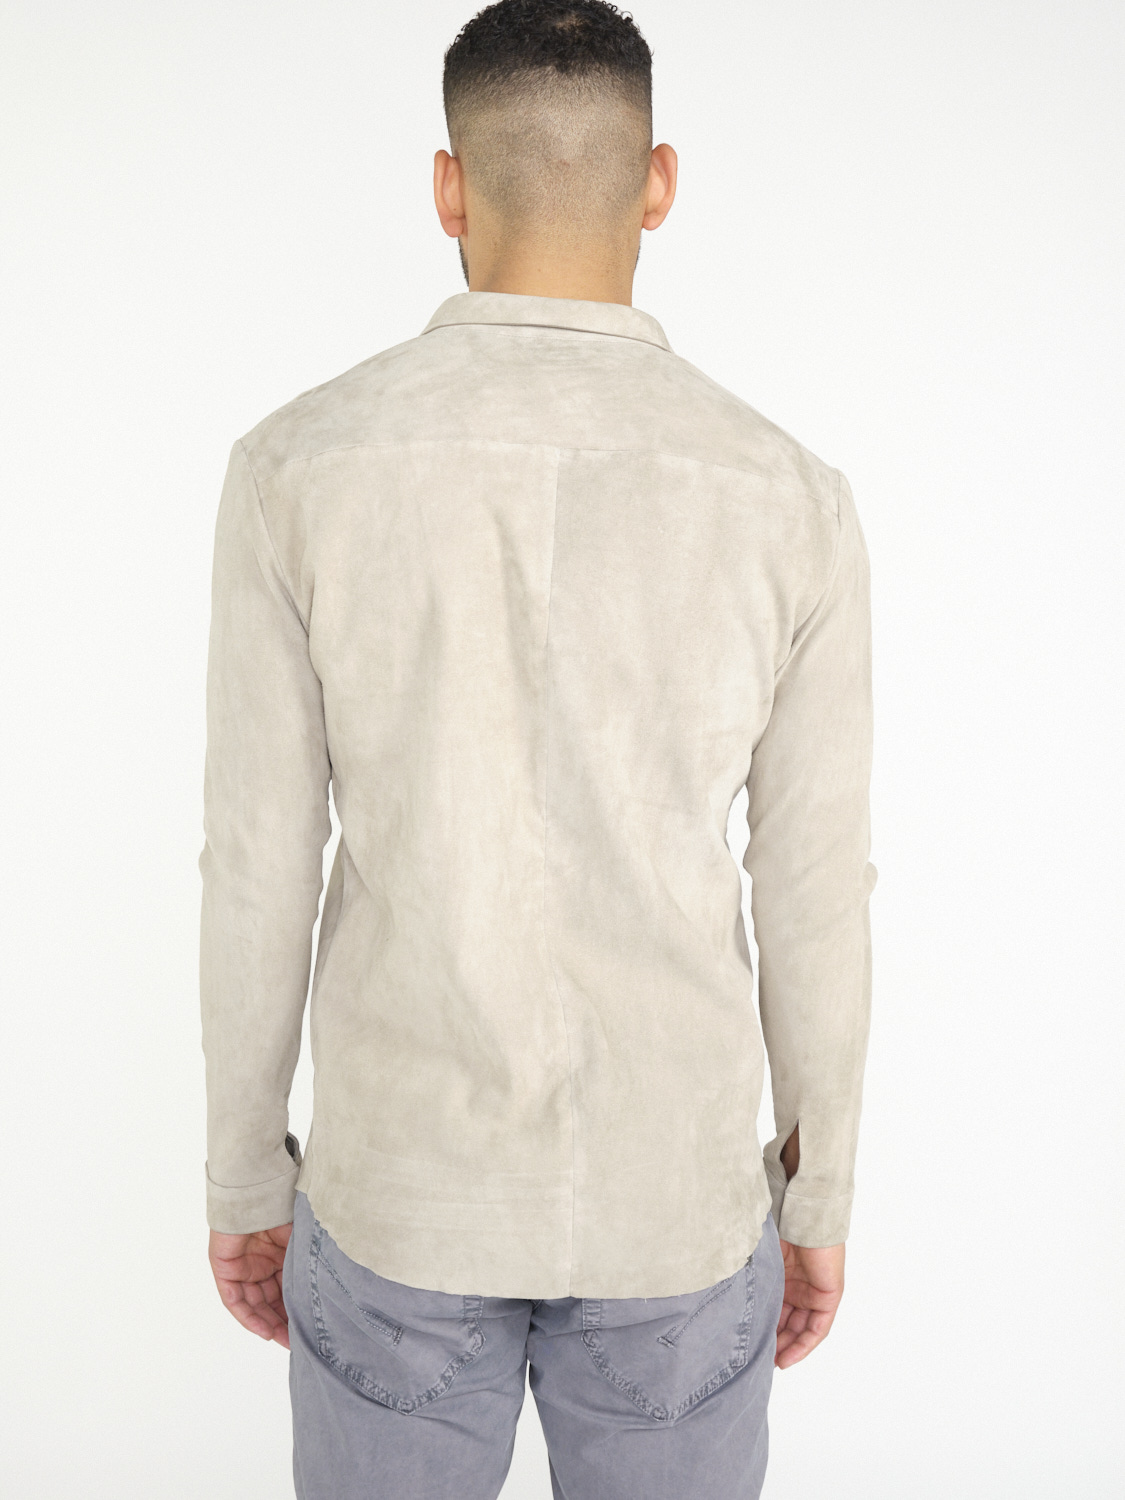 jitrois Wander – Stretchiges Hemd aus Veloursleder   crema 50